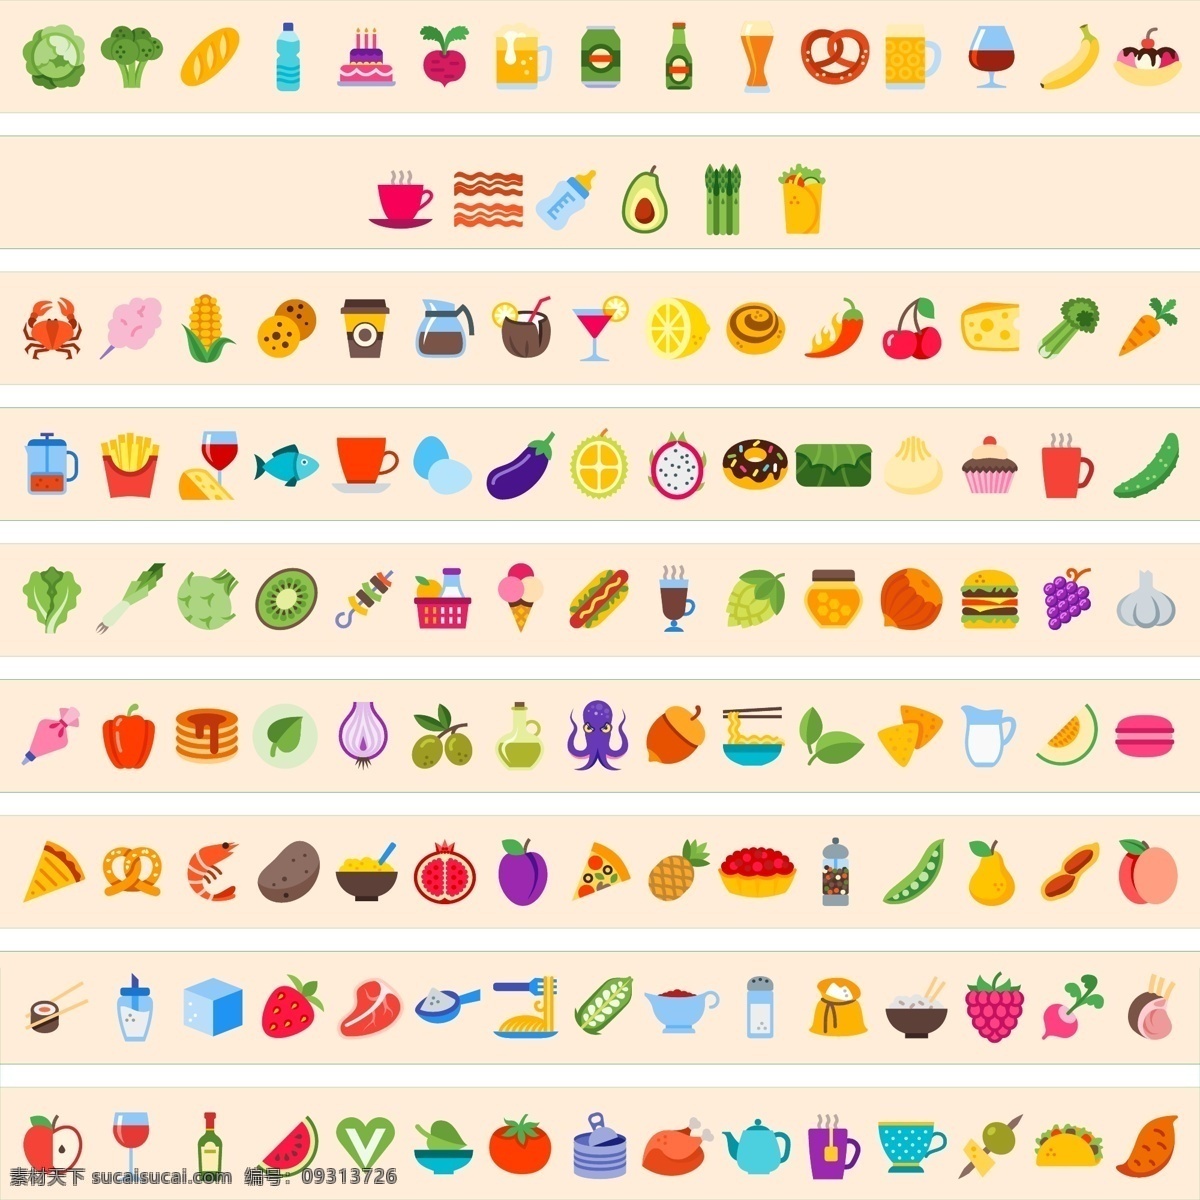 食品饮料 蔬菜水果 矢量 图标 食品 饮料 蔬菜 水果 矢量图标 标志图标 其他图标